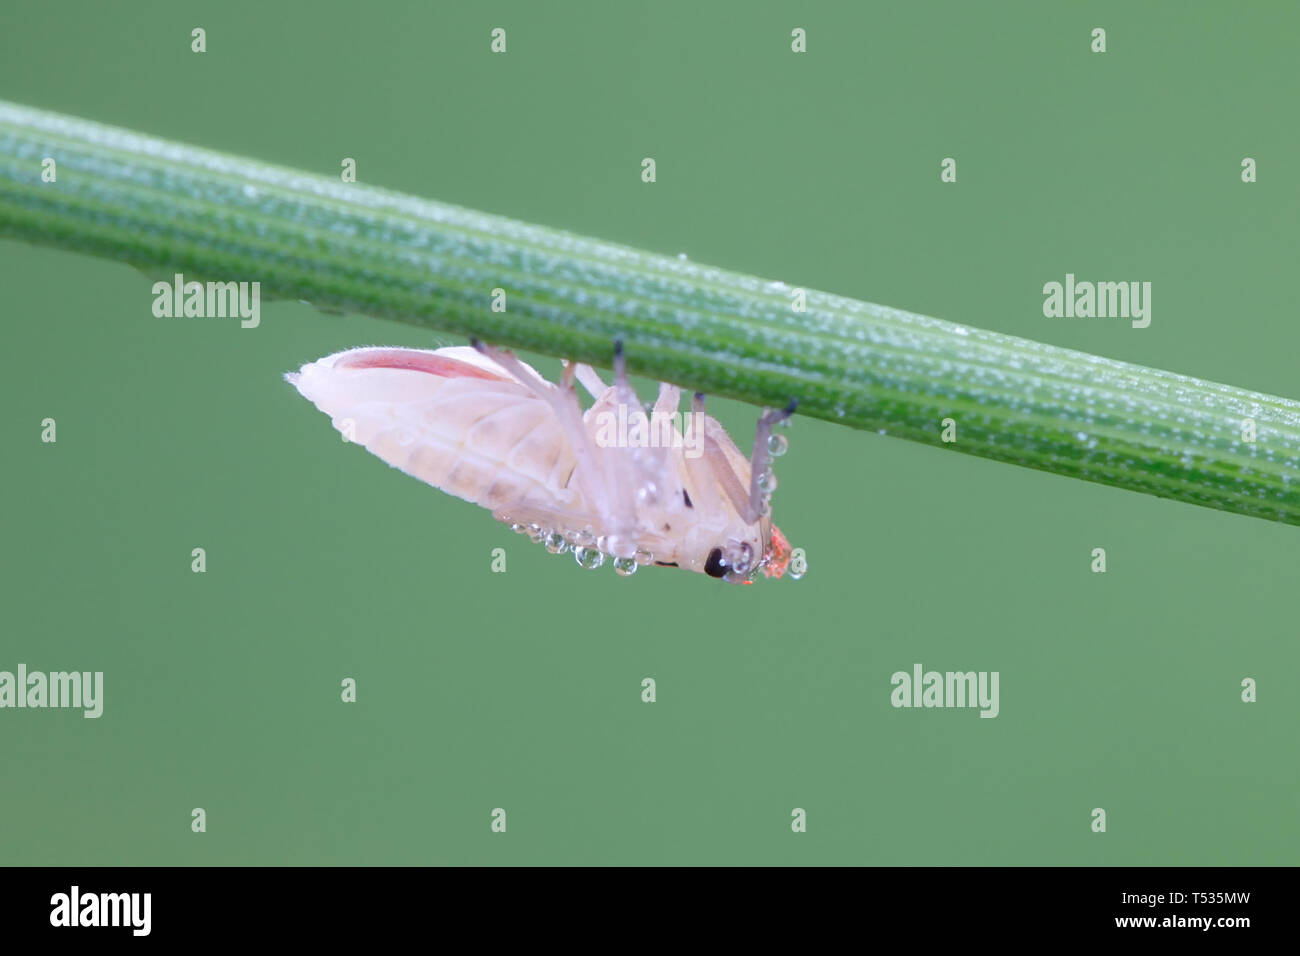 Spittlebug Nymphe oder larvenstadium Stockfoto